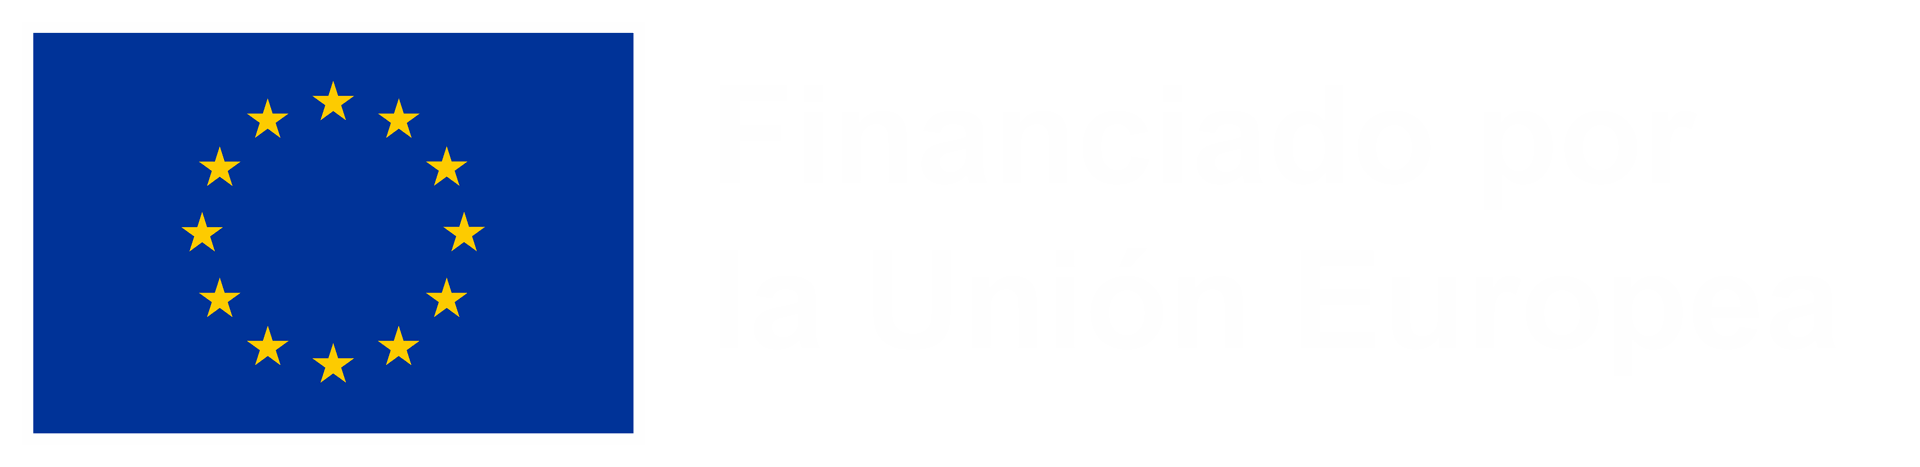 Sello comunicativo de Financiado por la Unión Europea